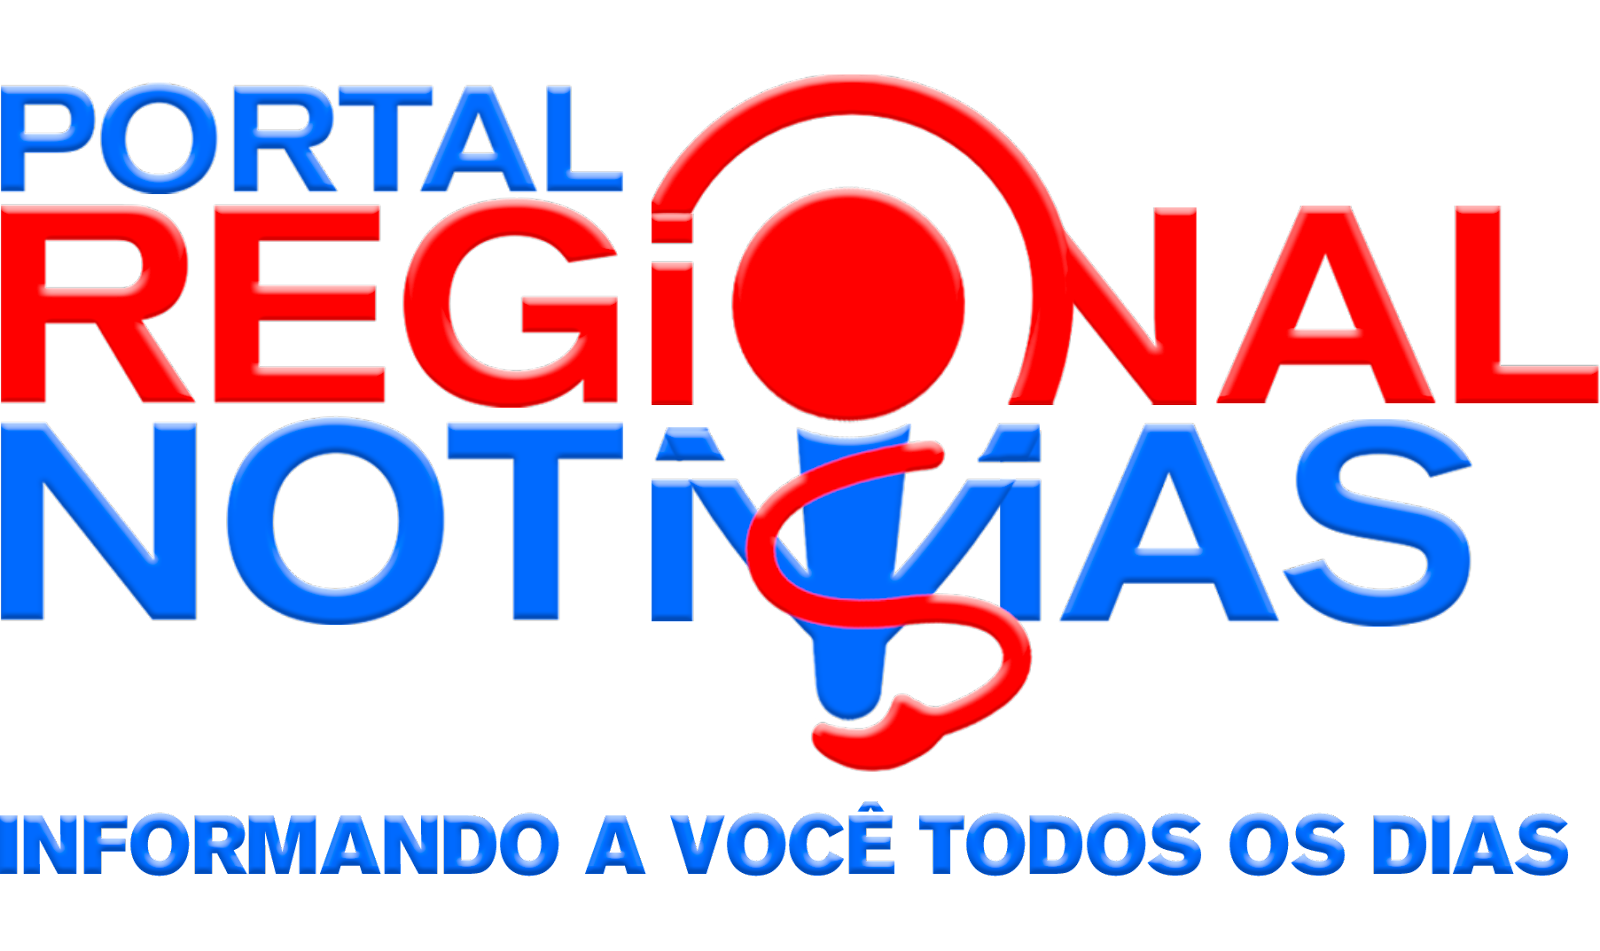 Portal Regional Notícias